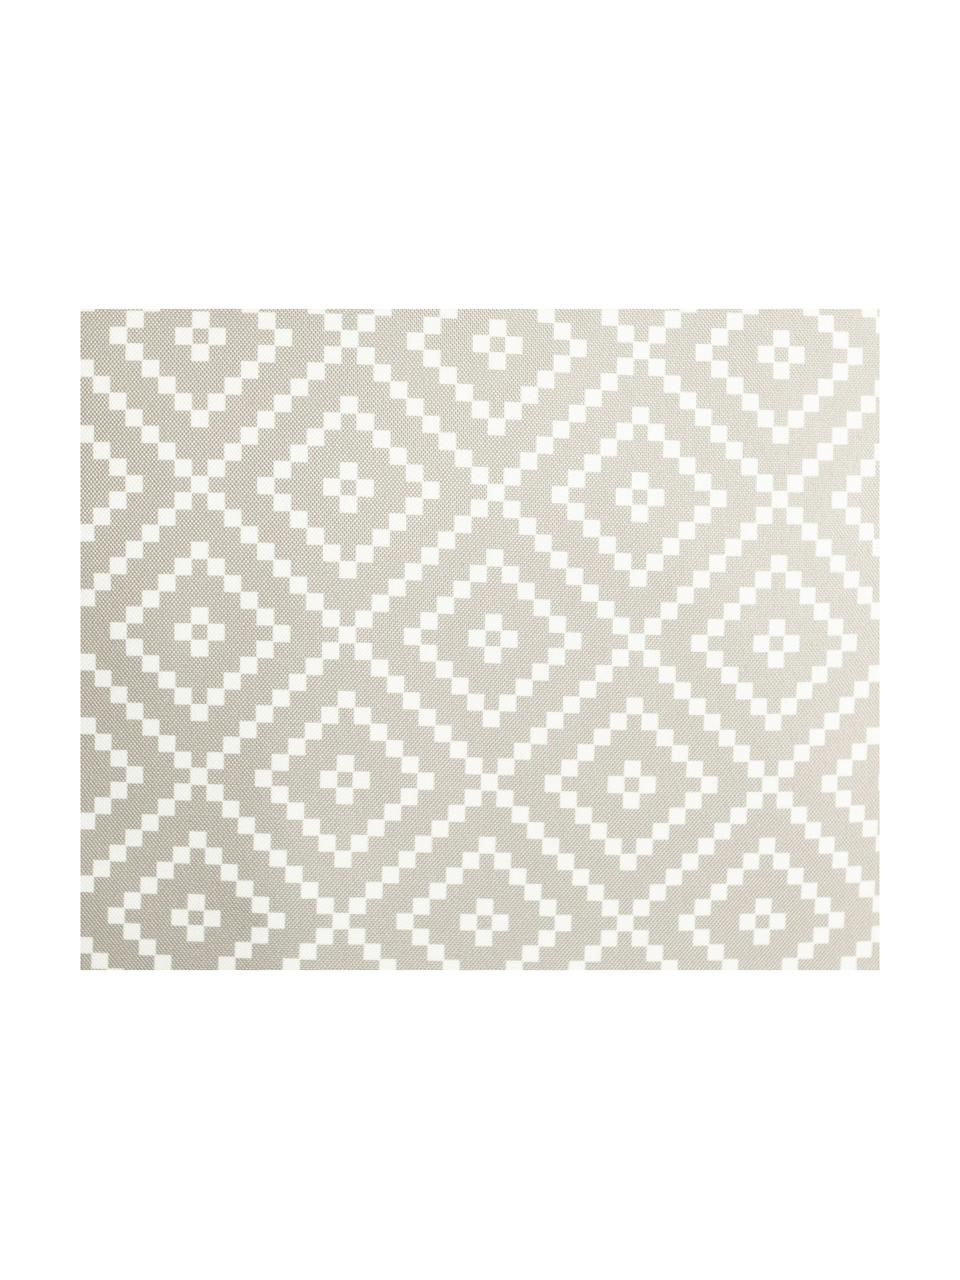 Outdoor-Kissen Little Diamond in Hellgrau/Weiß, Bezug: Polyester, Hellgrau, Weiß, 47 x 47 cm